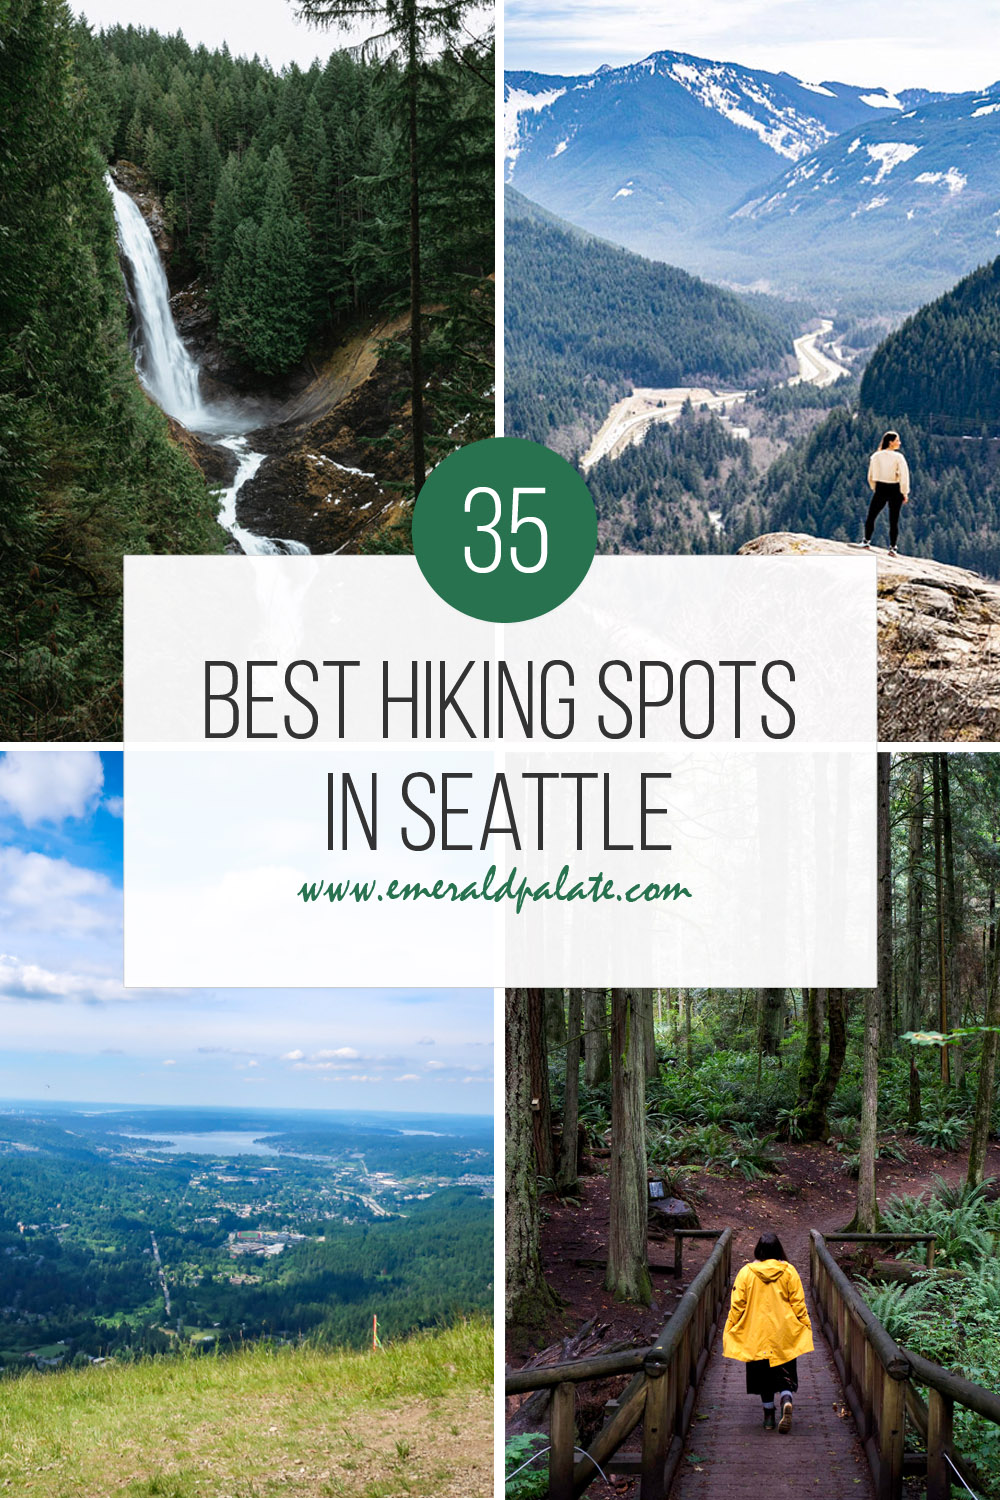 The 35 best hiking spots in Seattle.